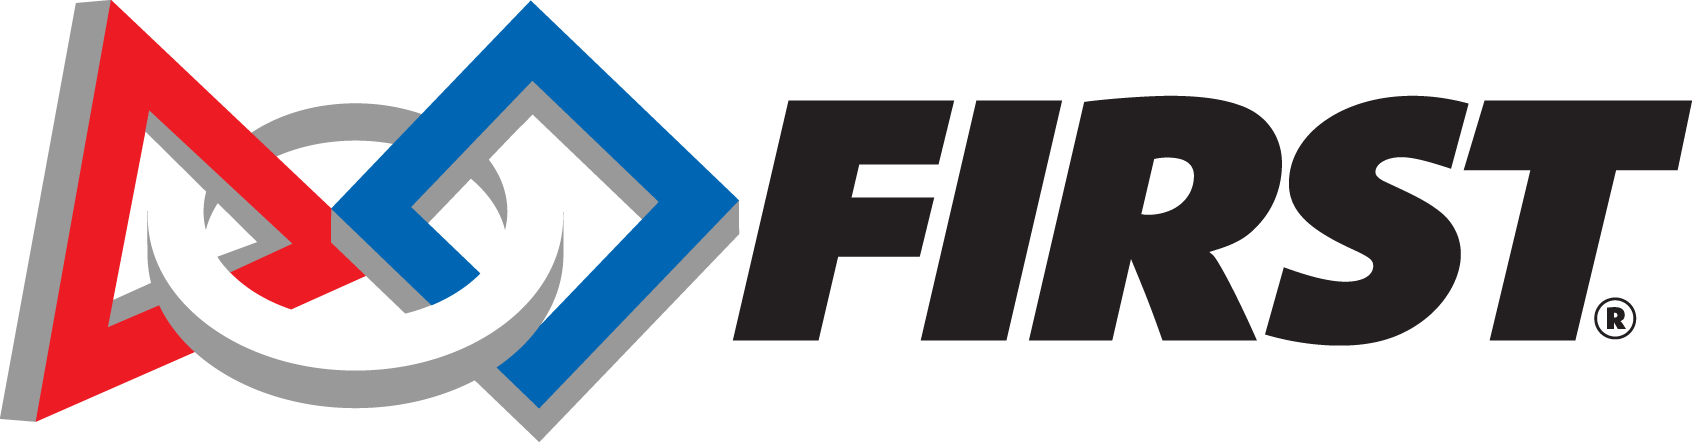 Utah FTC State Championships  logo